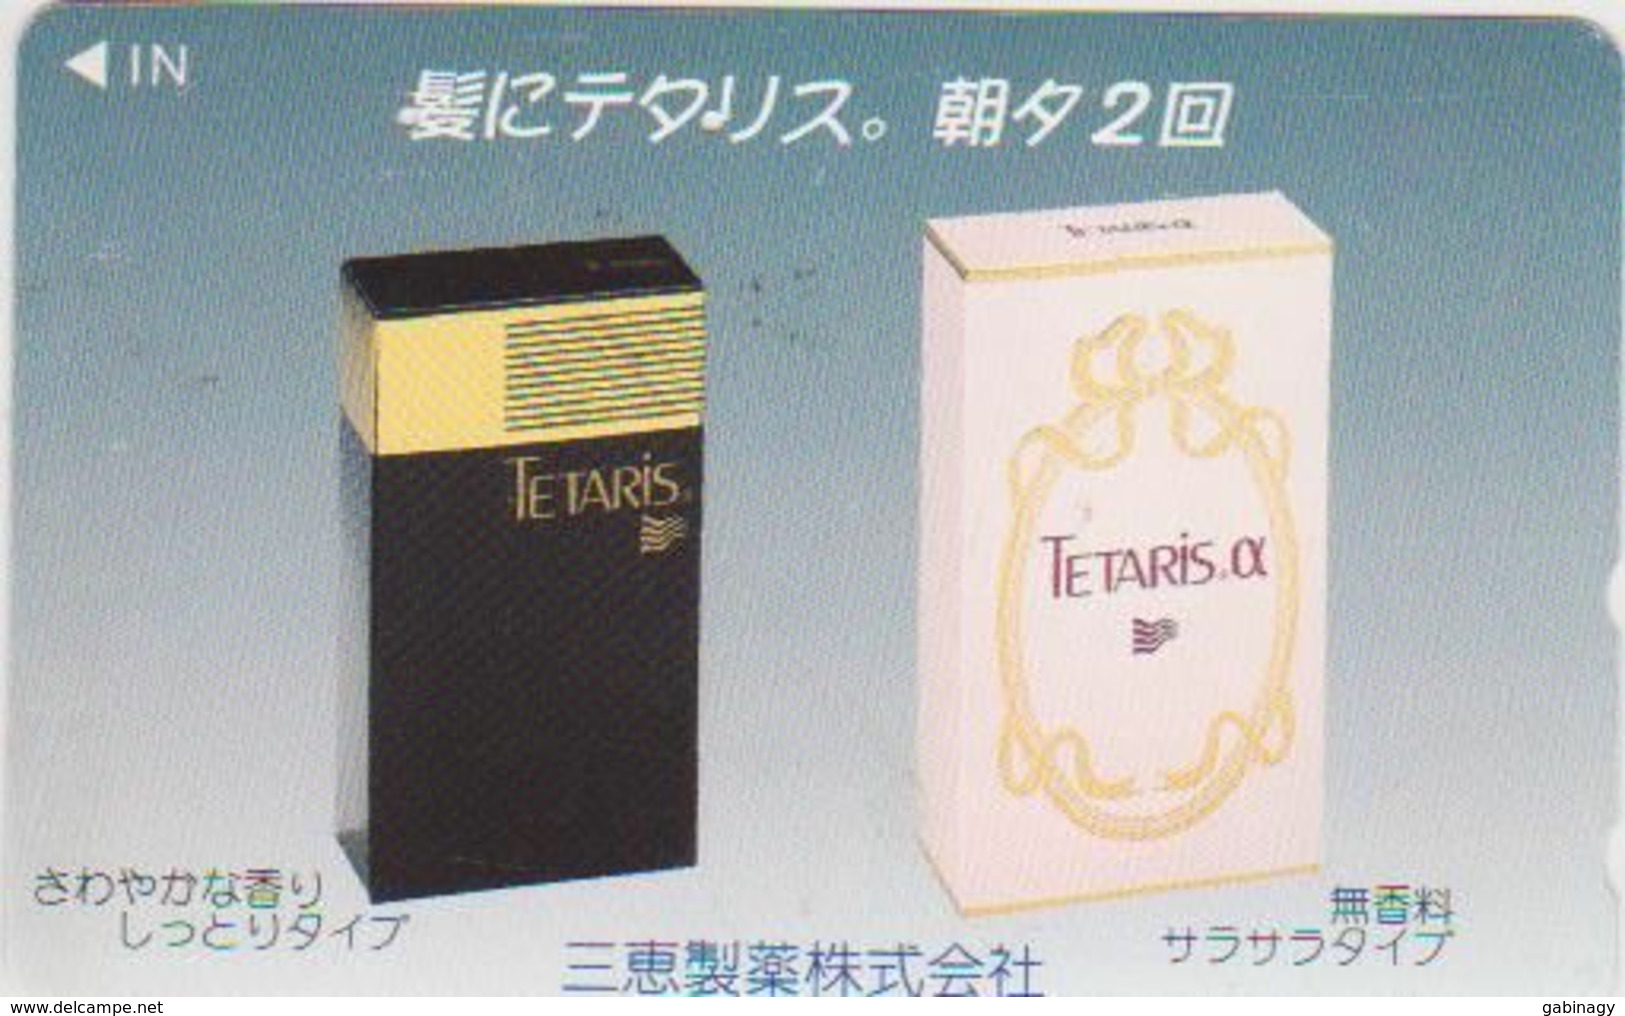 COSMETIC - JAPAN 007 - Tetaris - Parfum